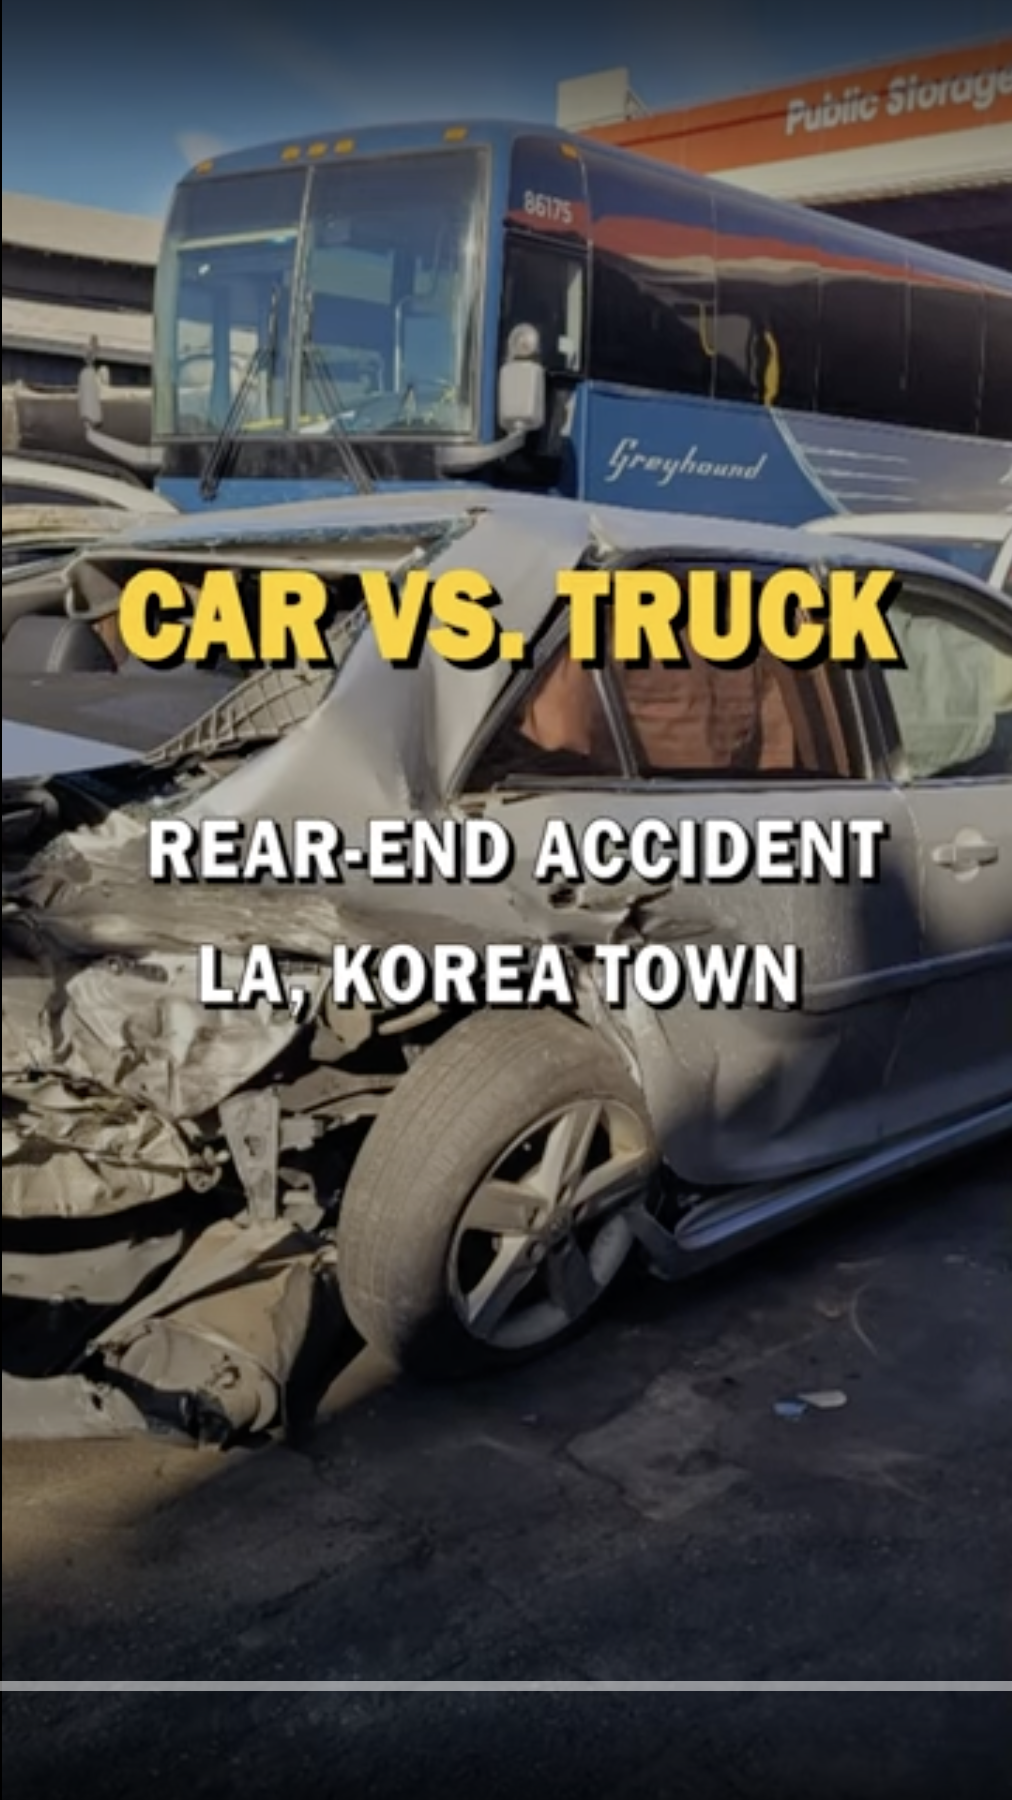 Rear-End Accident – LA, Korea Town